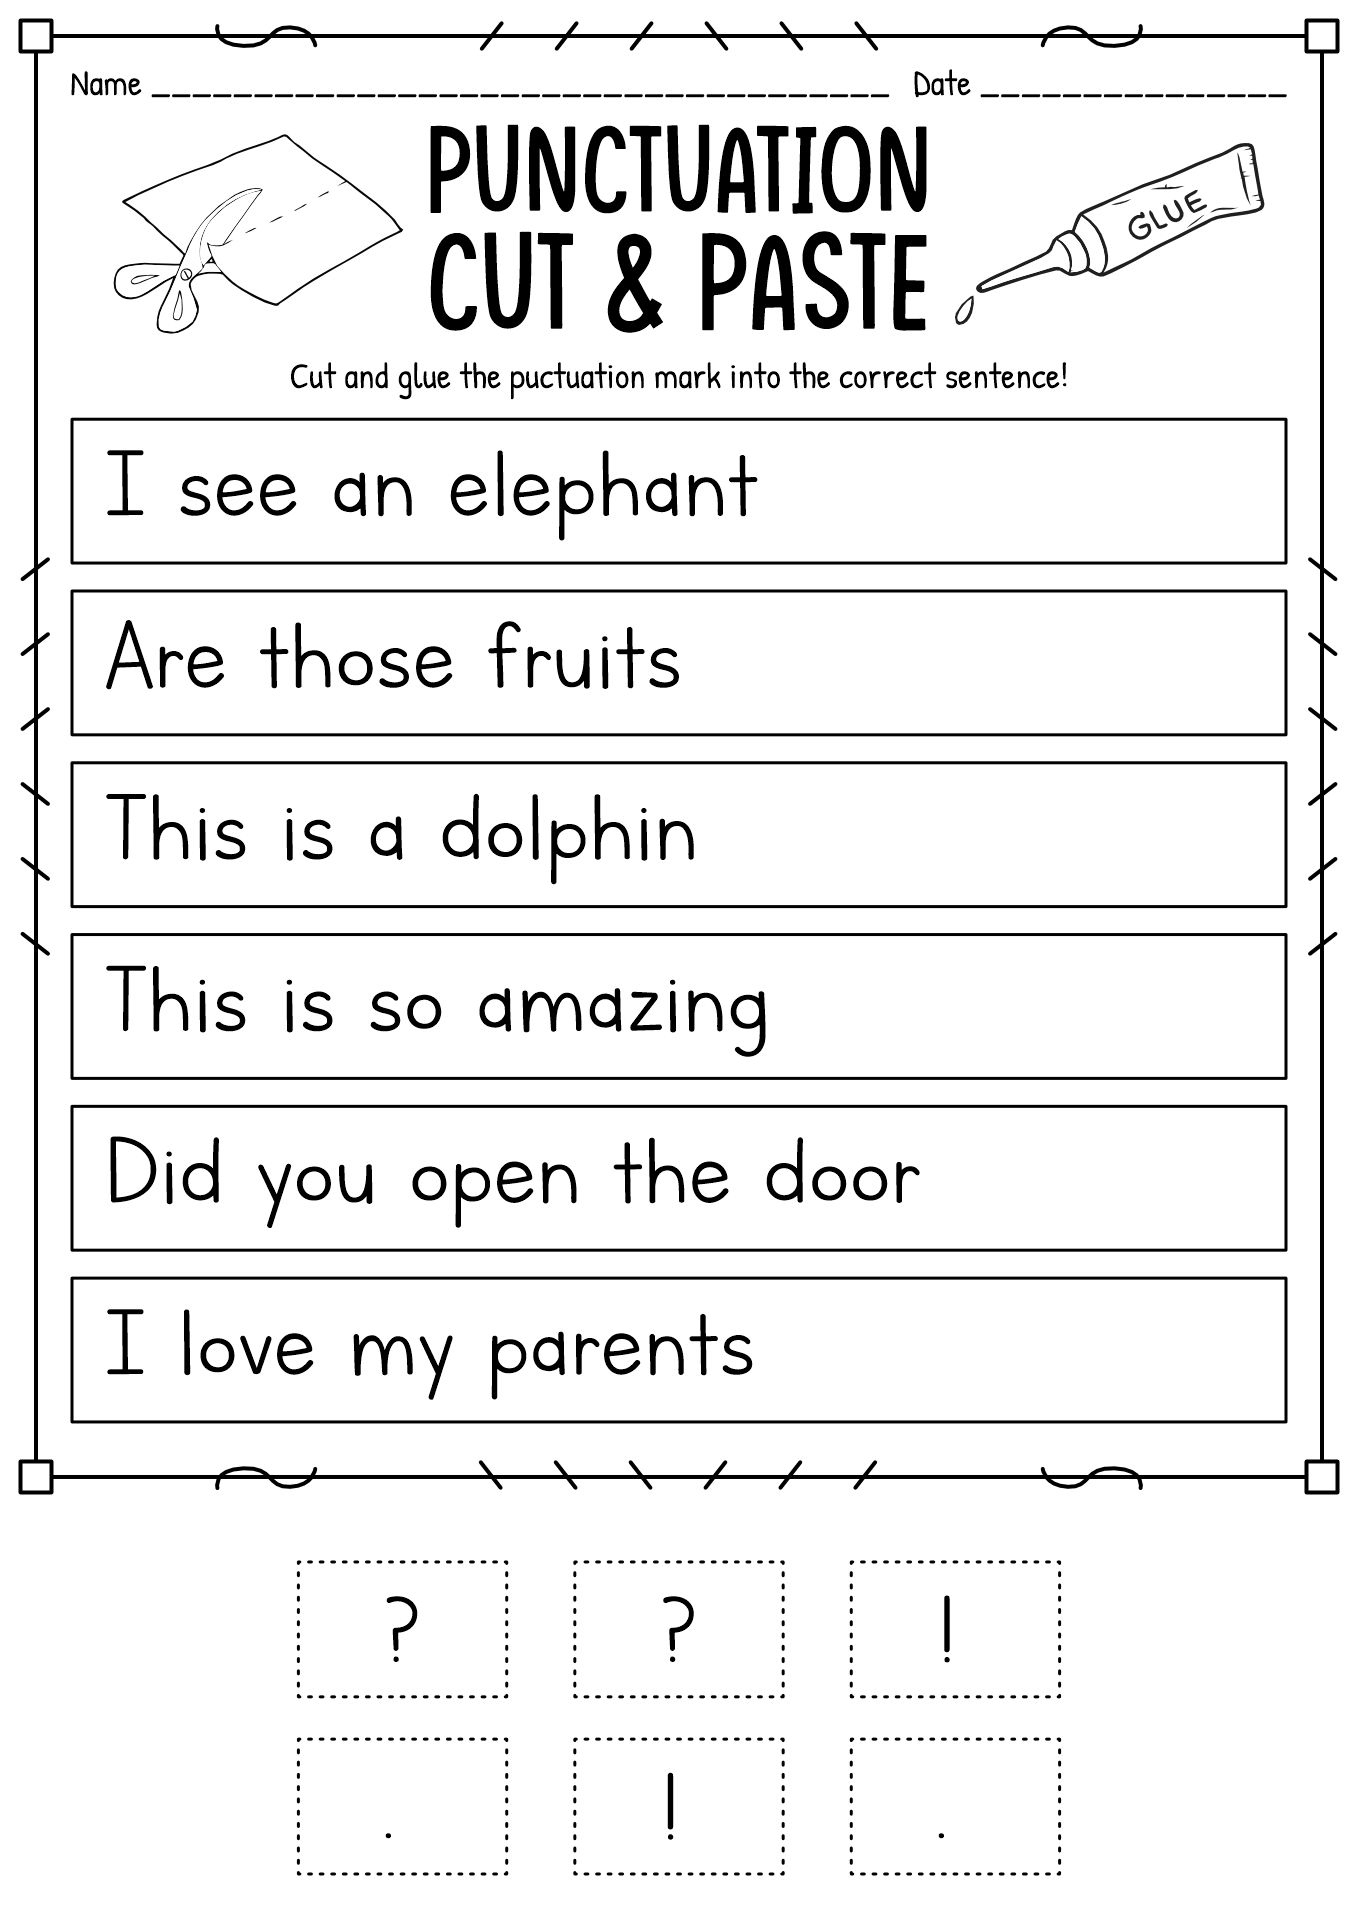 8 Kindergarten Language Arts Worksheets - Free Pdf At Worksheeto for Free Printable Language Arts Worksheets For Kindergarten